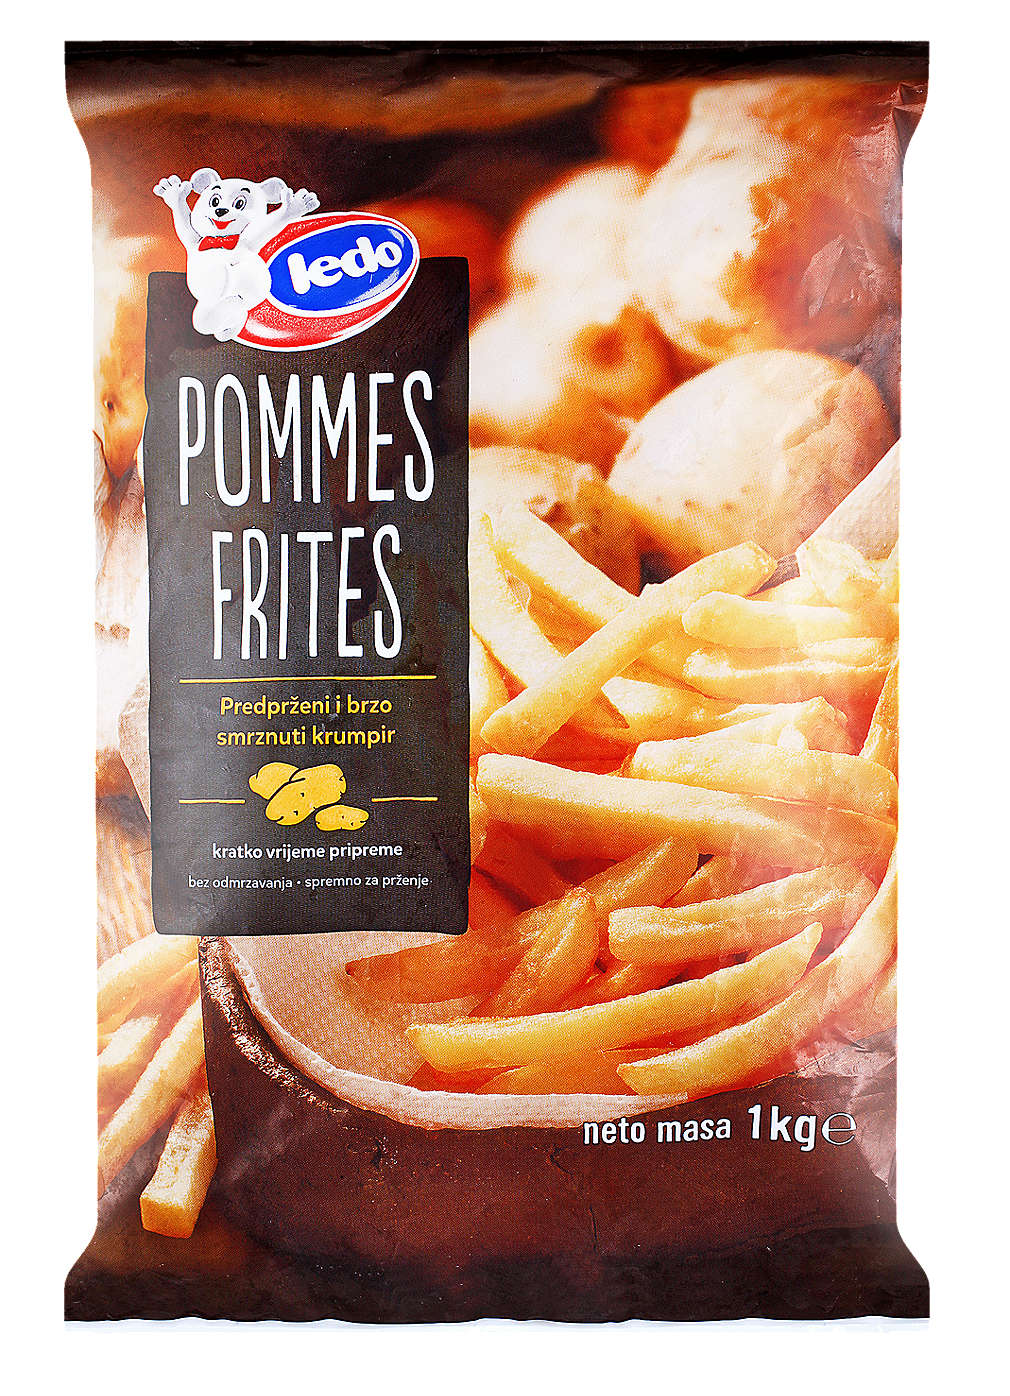 Fotografija ponude Ledo Pommes frites